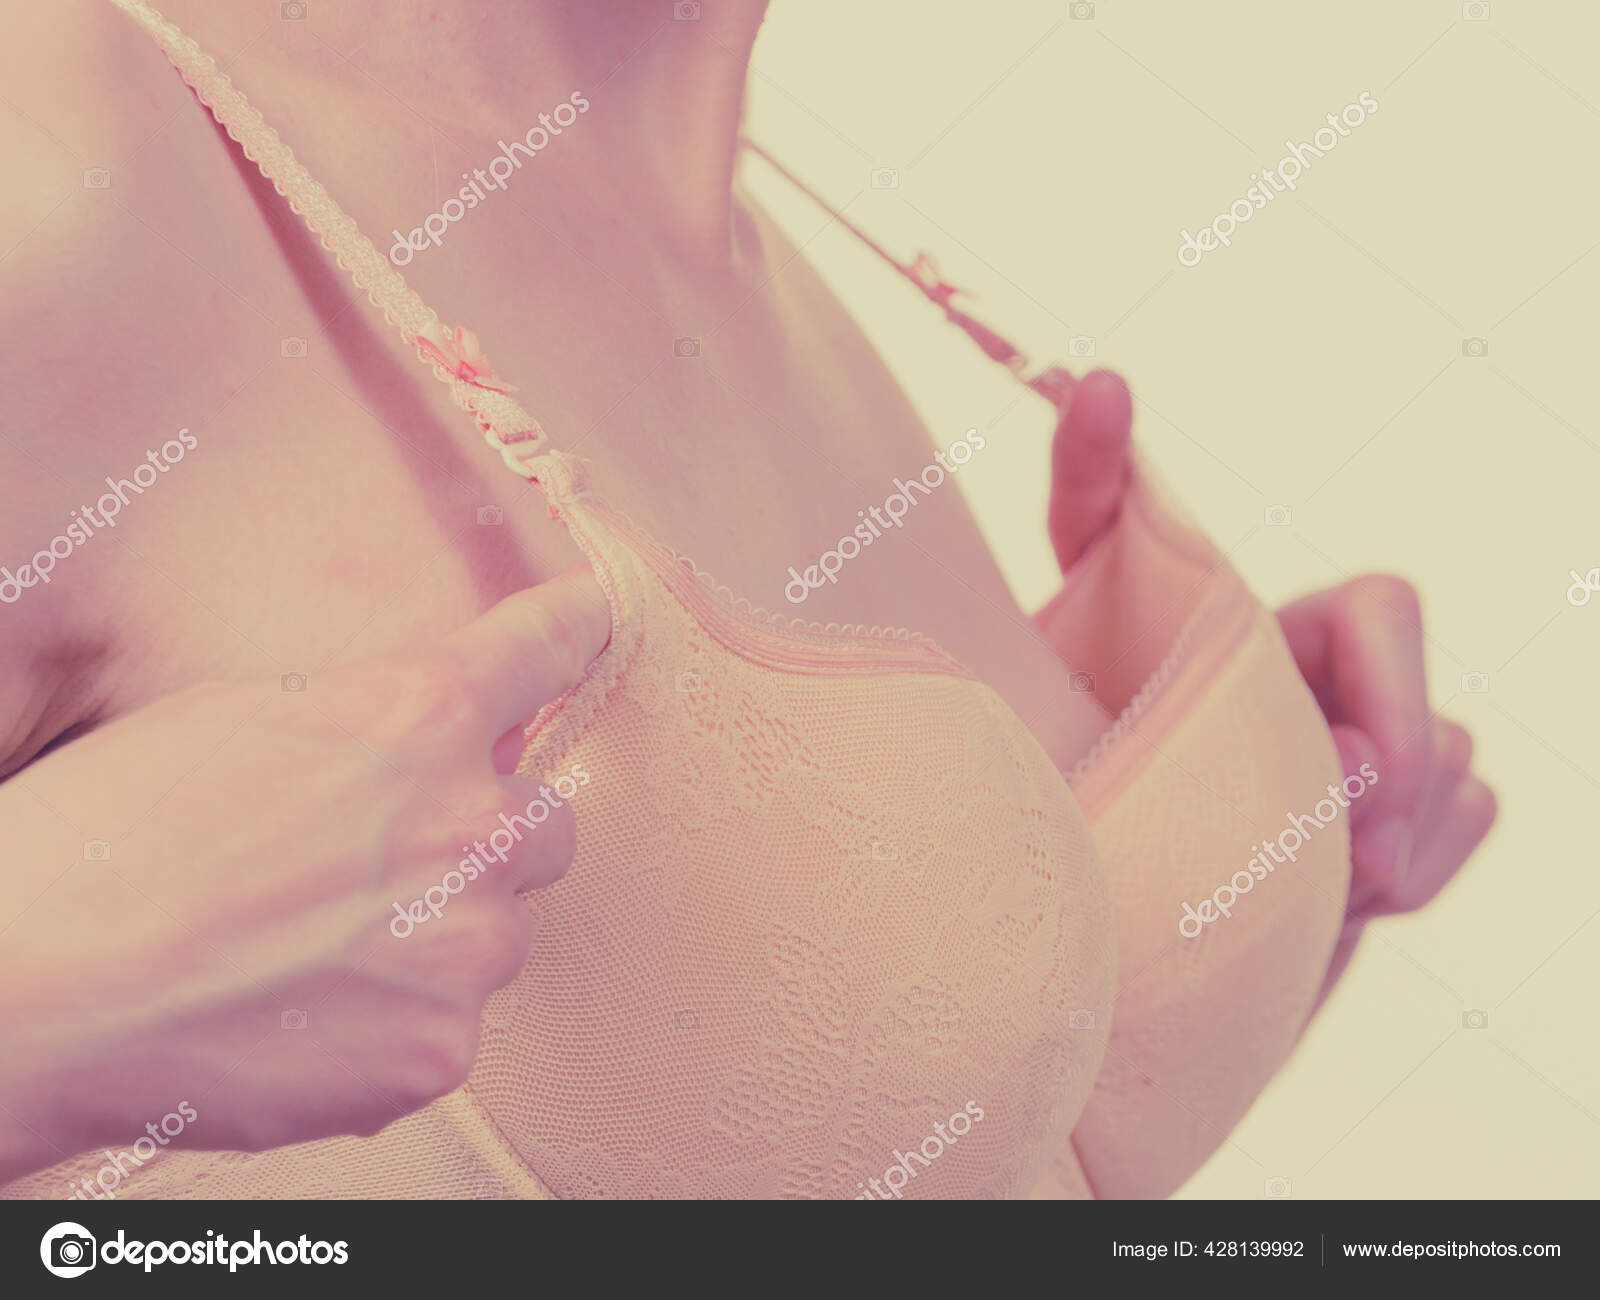 Junge Frau Kleine Brüste Tragen Großen Weibliche Brüste Falsche Größe -  Stockfotografie: lizenzfreie Fotos © Voyagerix 428139992